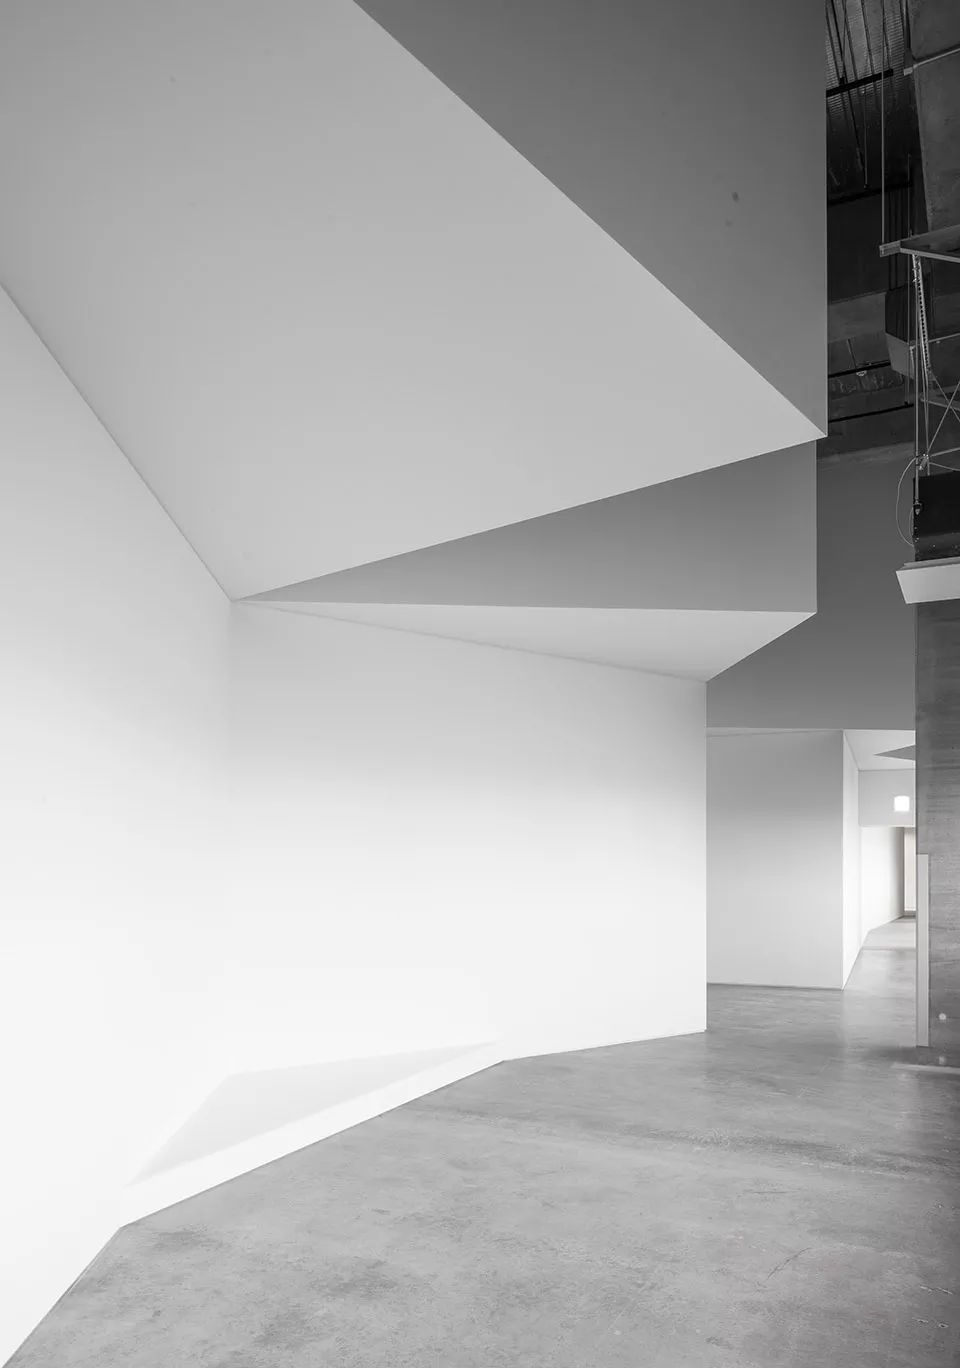 富有动感的静态建筑空间- 智能物流中心的展示空间原型，日本/ Bureau 0 